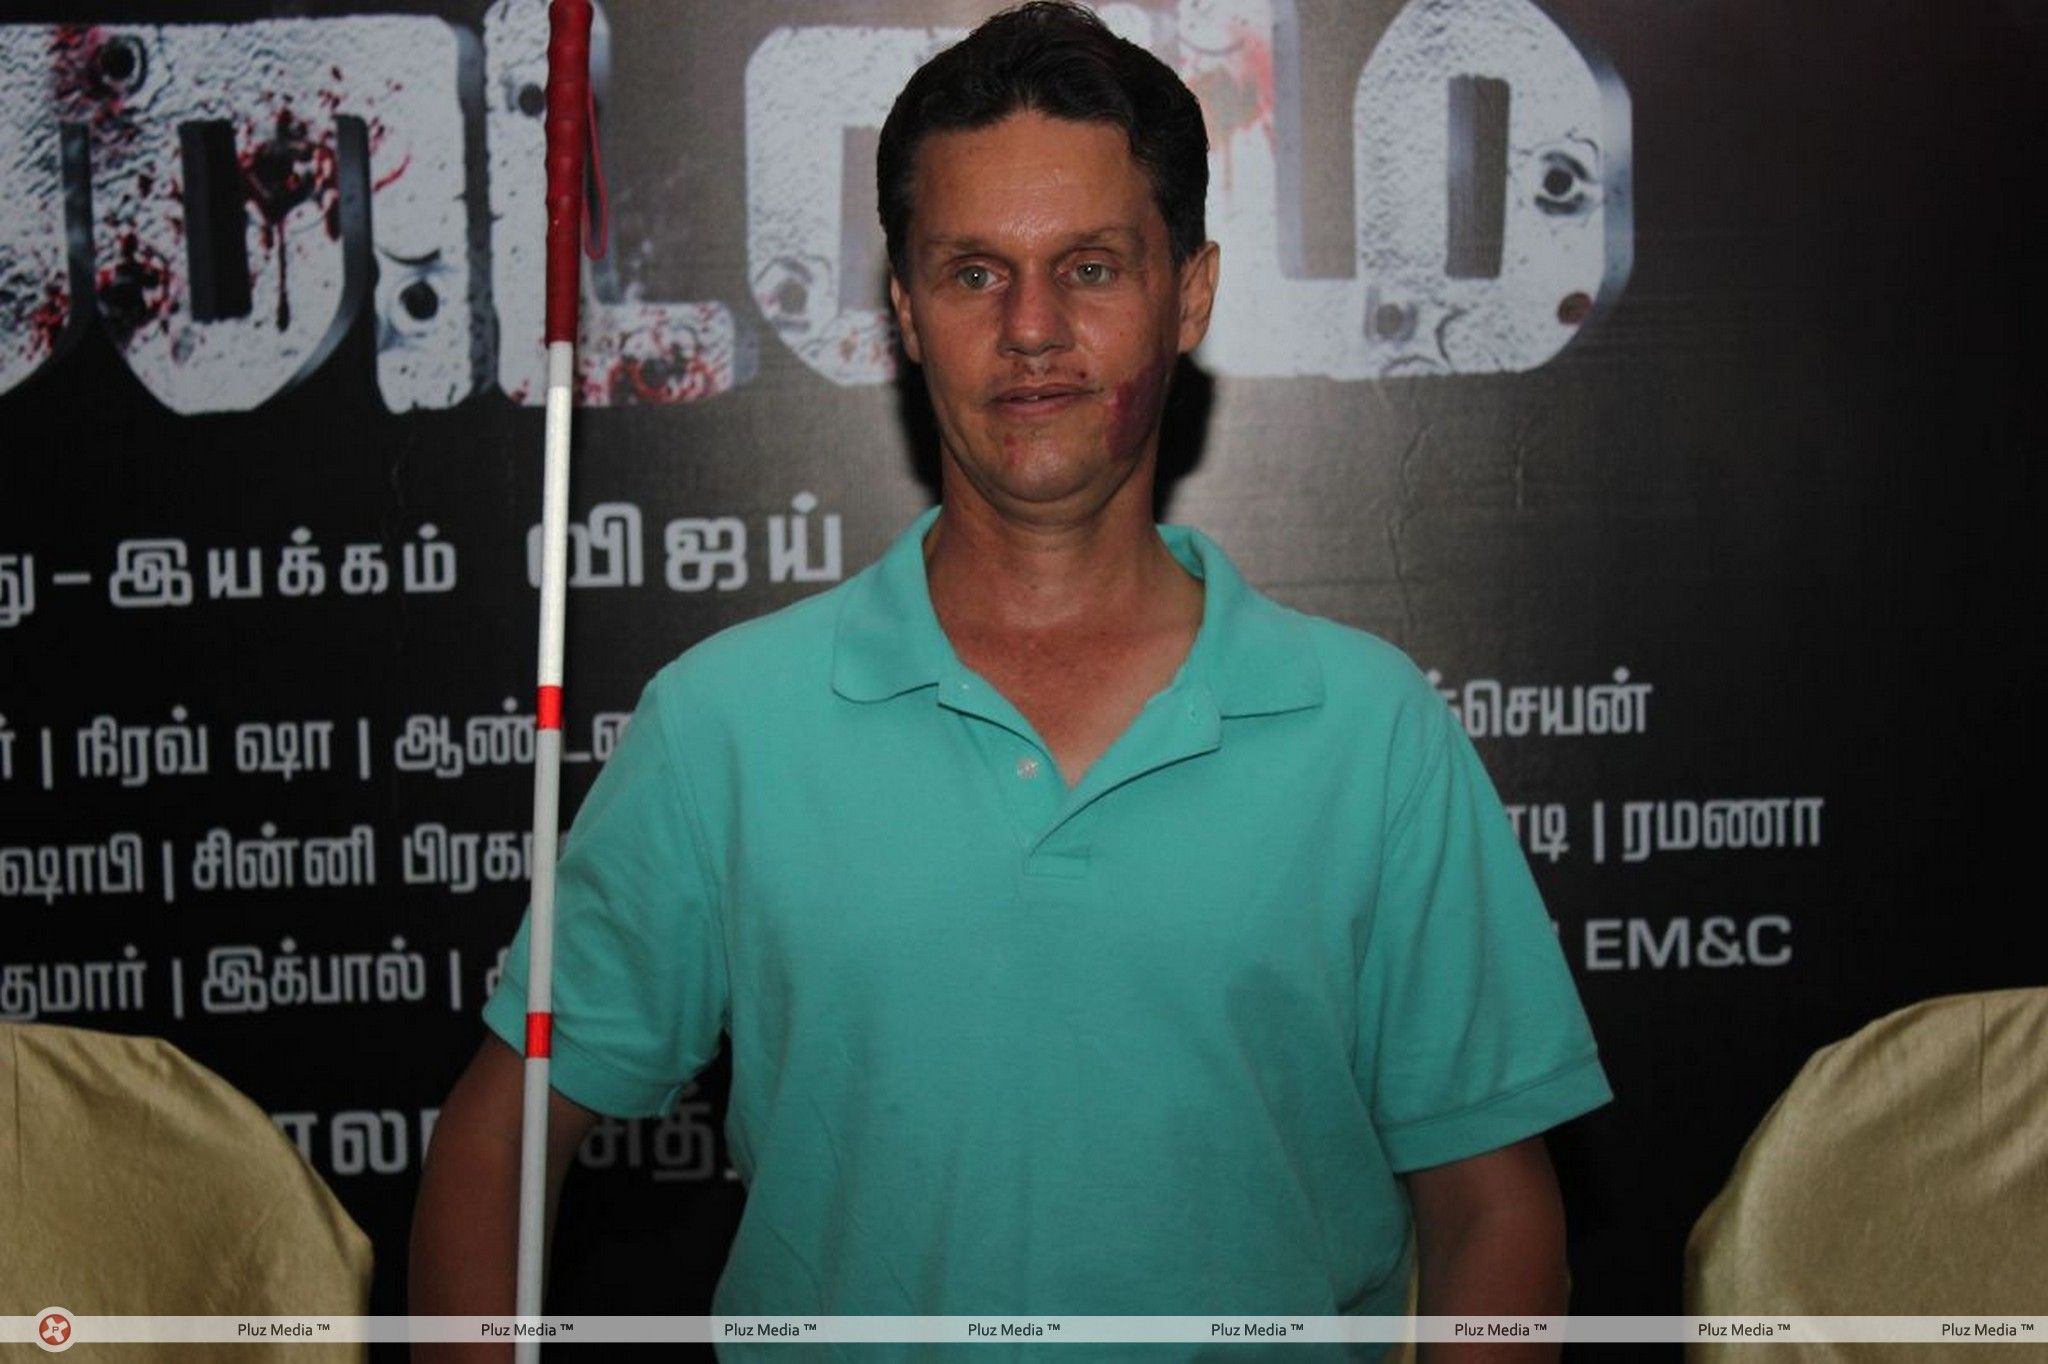 Thandavam Movie Press Meet Stills | Picture 273532